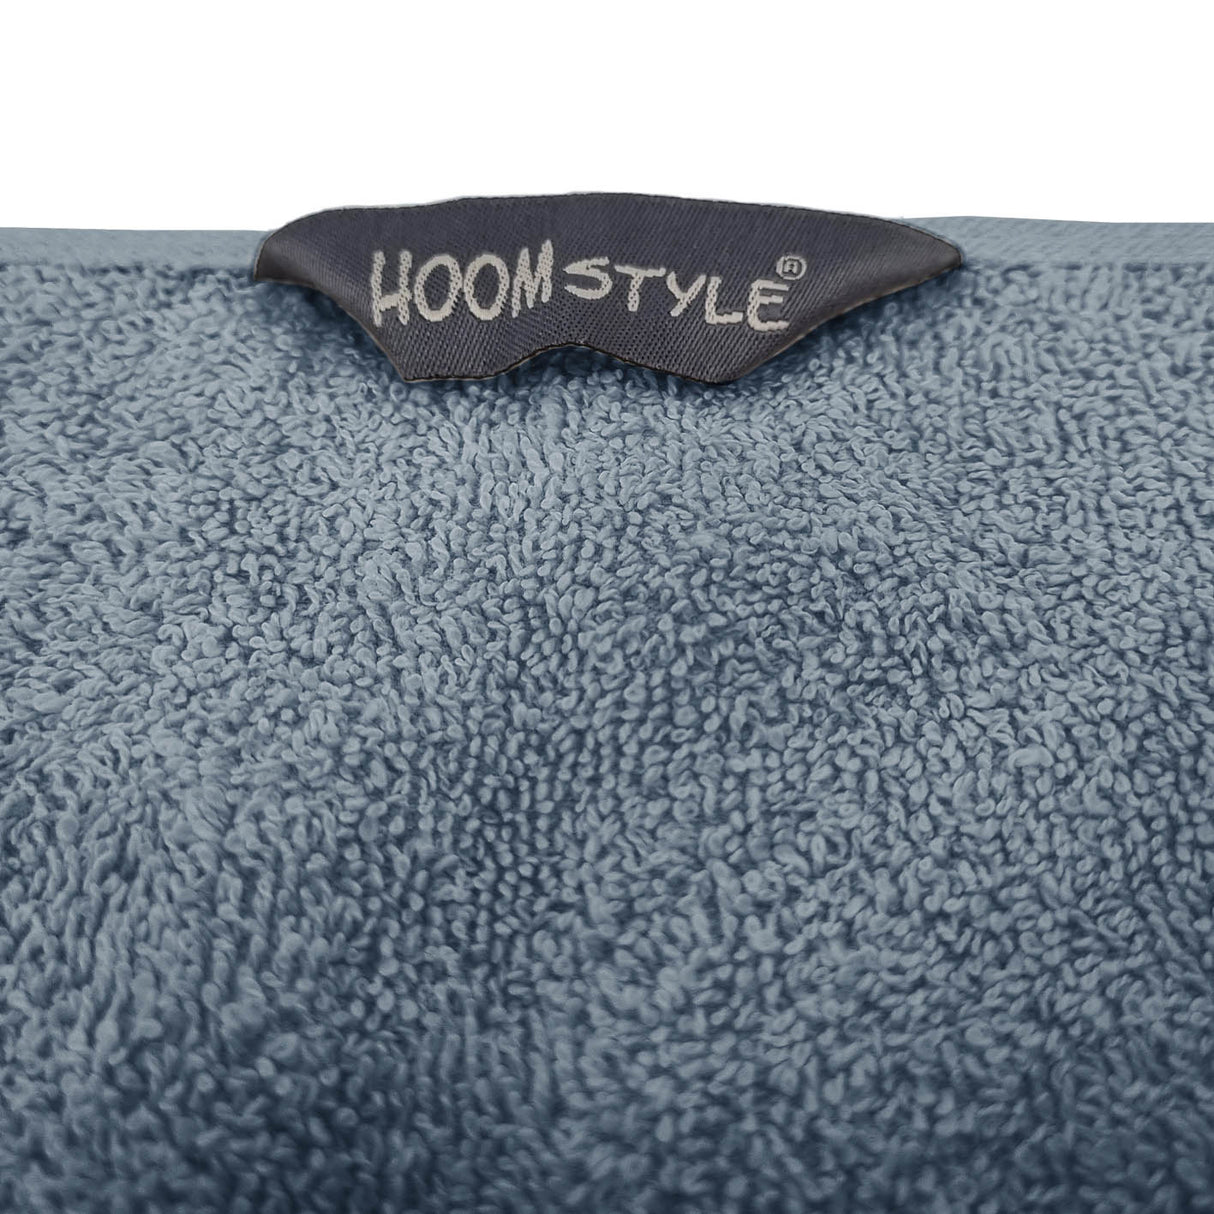 HOOMstyle Handdoeken Set - Hotelkwaliteit - 100% Katoen 650gr